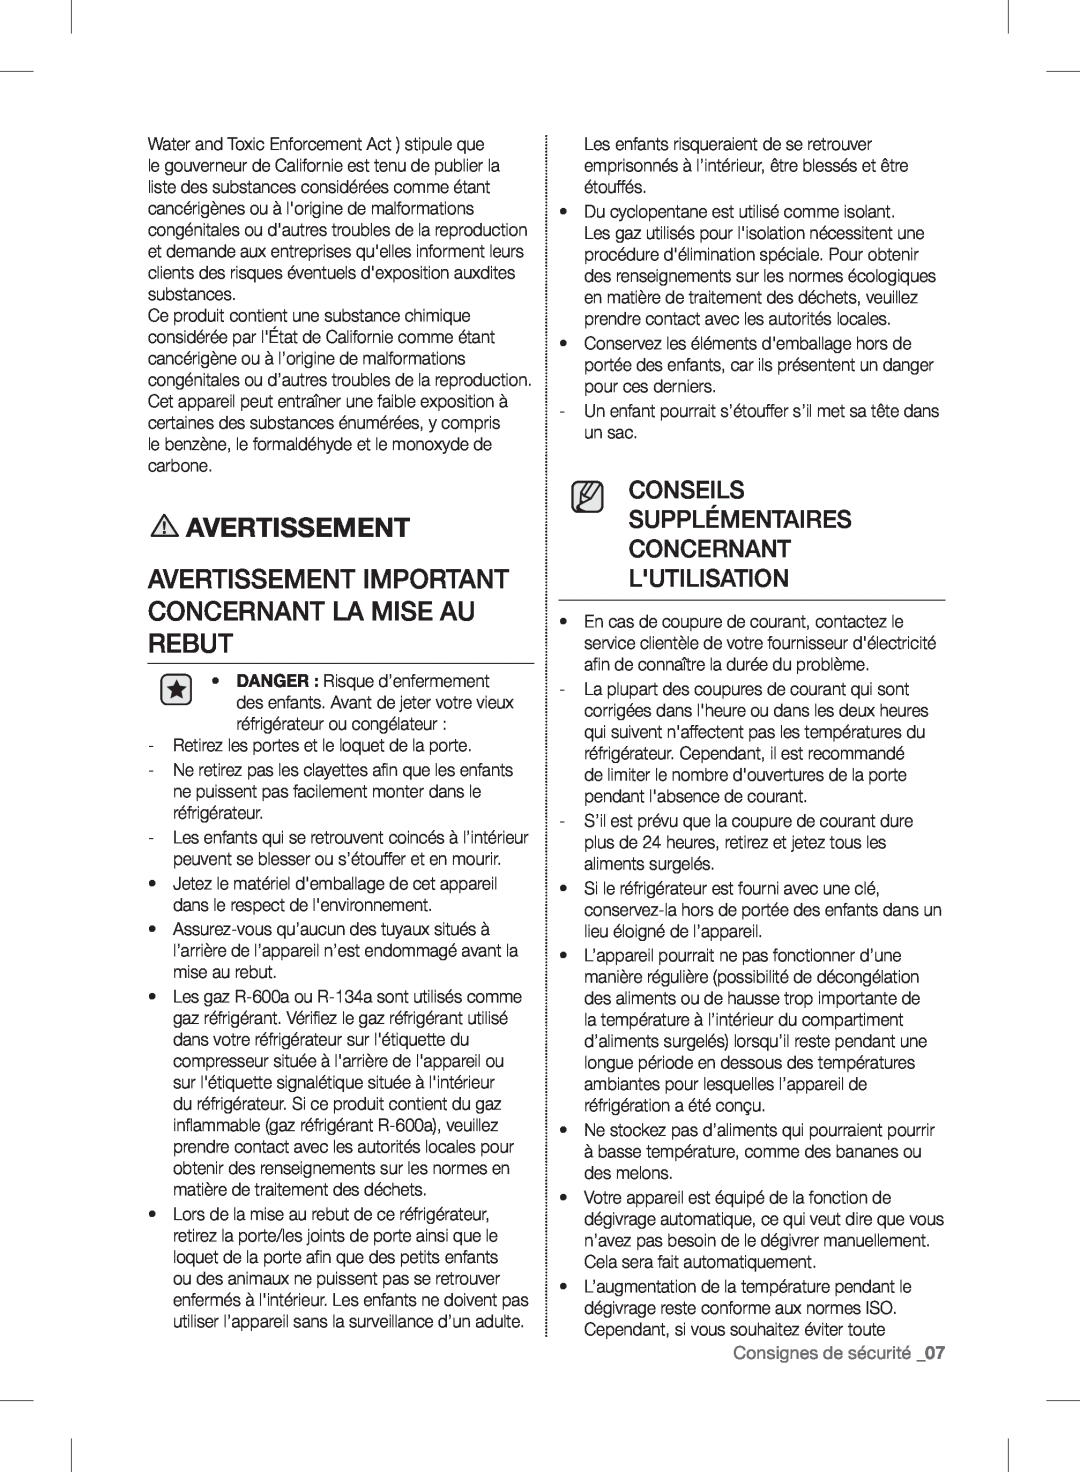 Samsung RF24FSEDBSR user manual Conseils Supplémentaires Concernant Lutilisation, Consignes de sécurité _07, Avertissement 